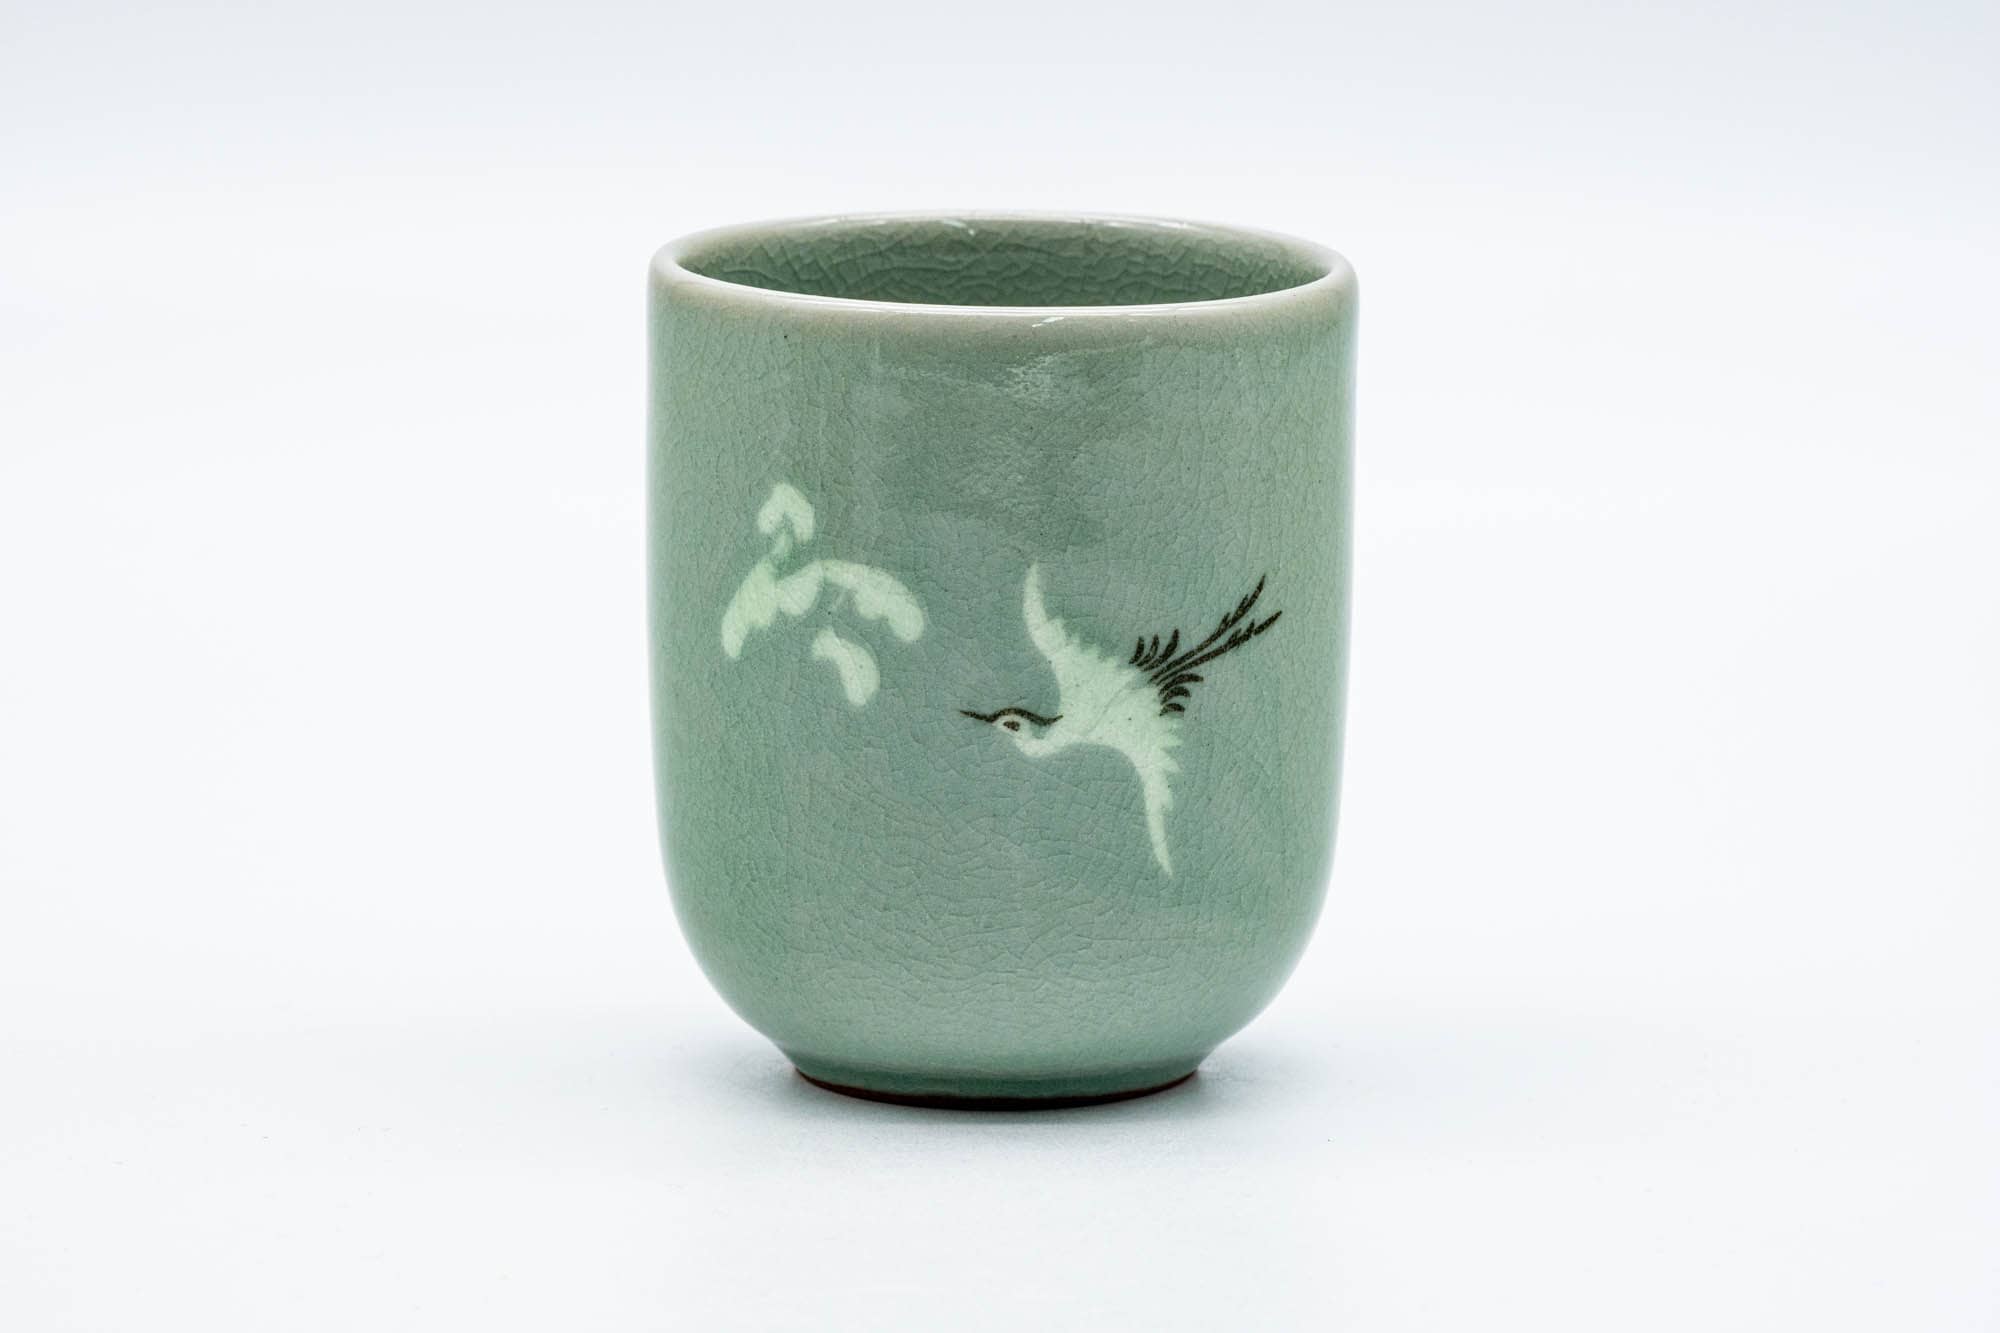 Japanese Teacup - Egret Green Celadon Yunomi - 175ml